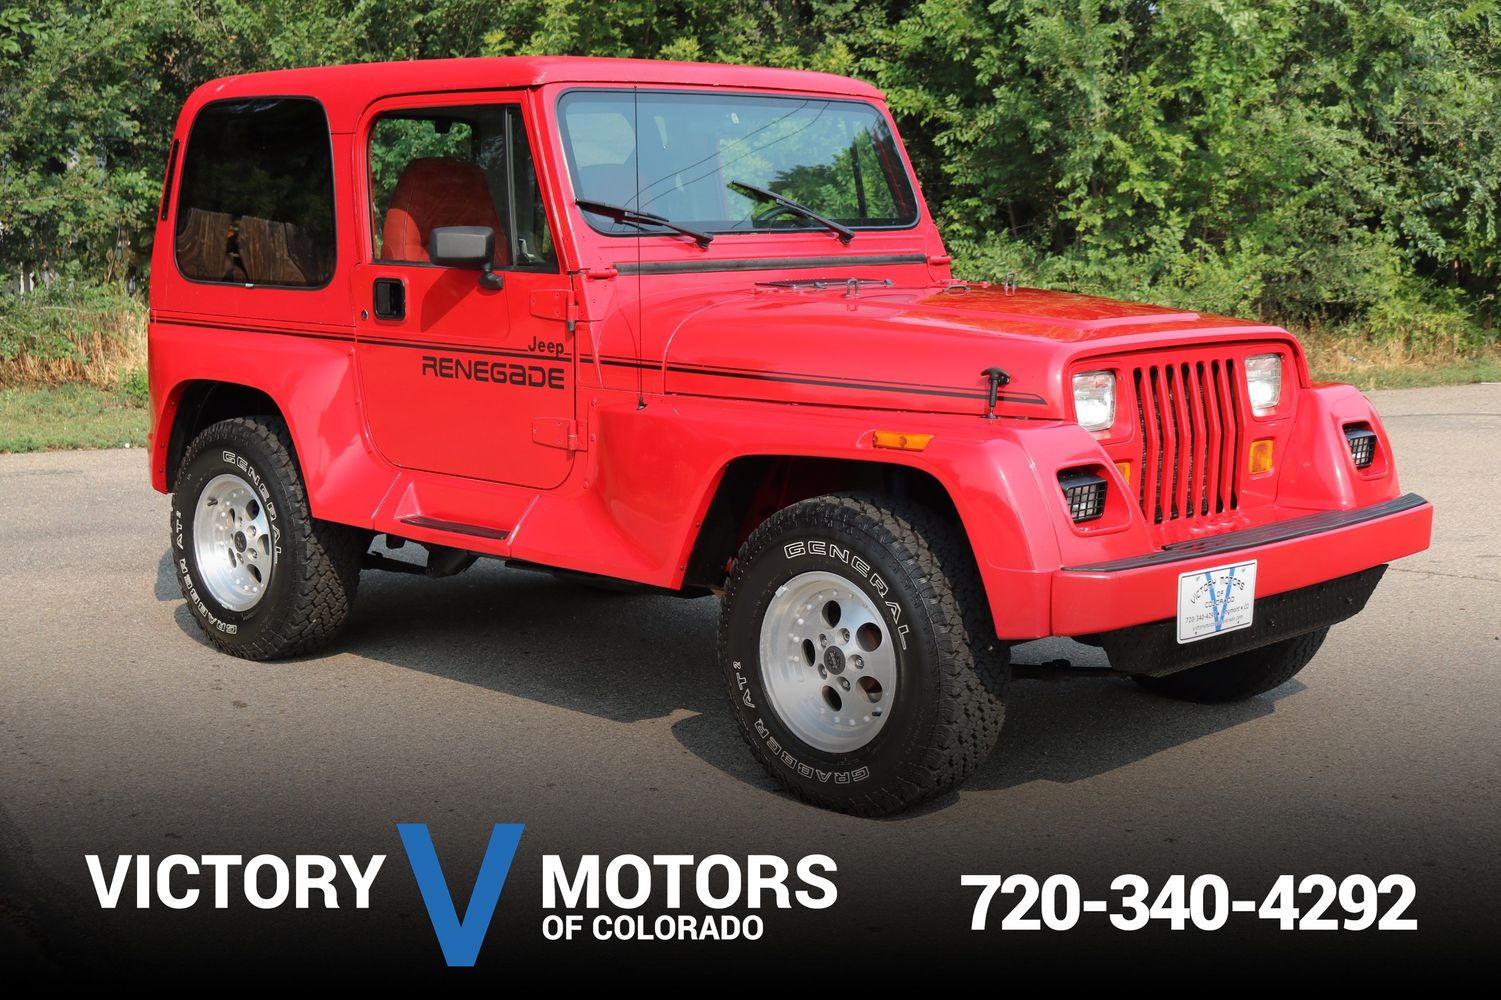 1991 Jeep Wrangler Renegade | Victory Motors of Colorado